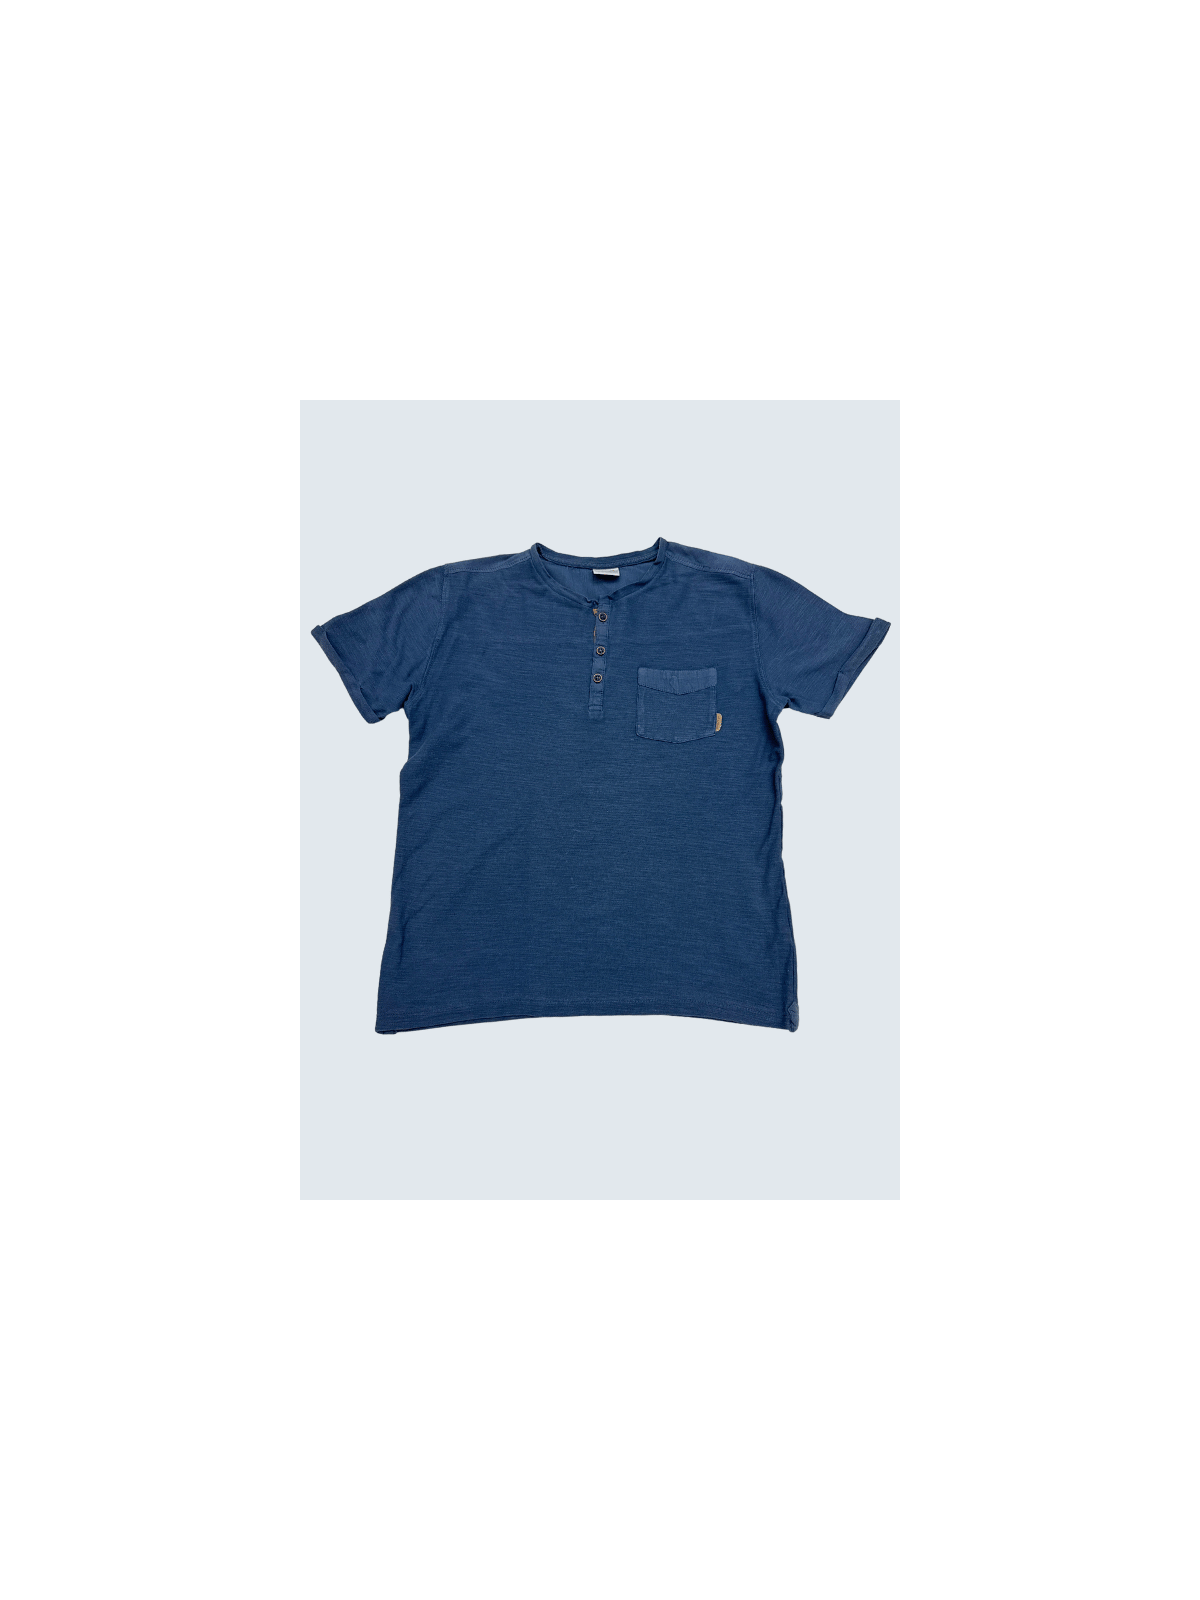 T-Shirt d'occasion Zara 10 Ans pour garçon.